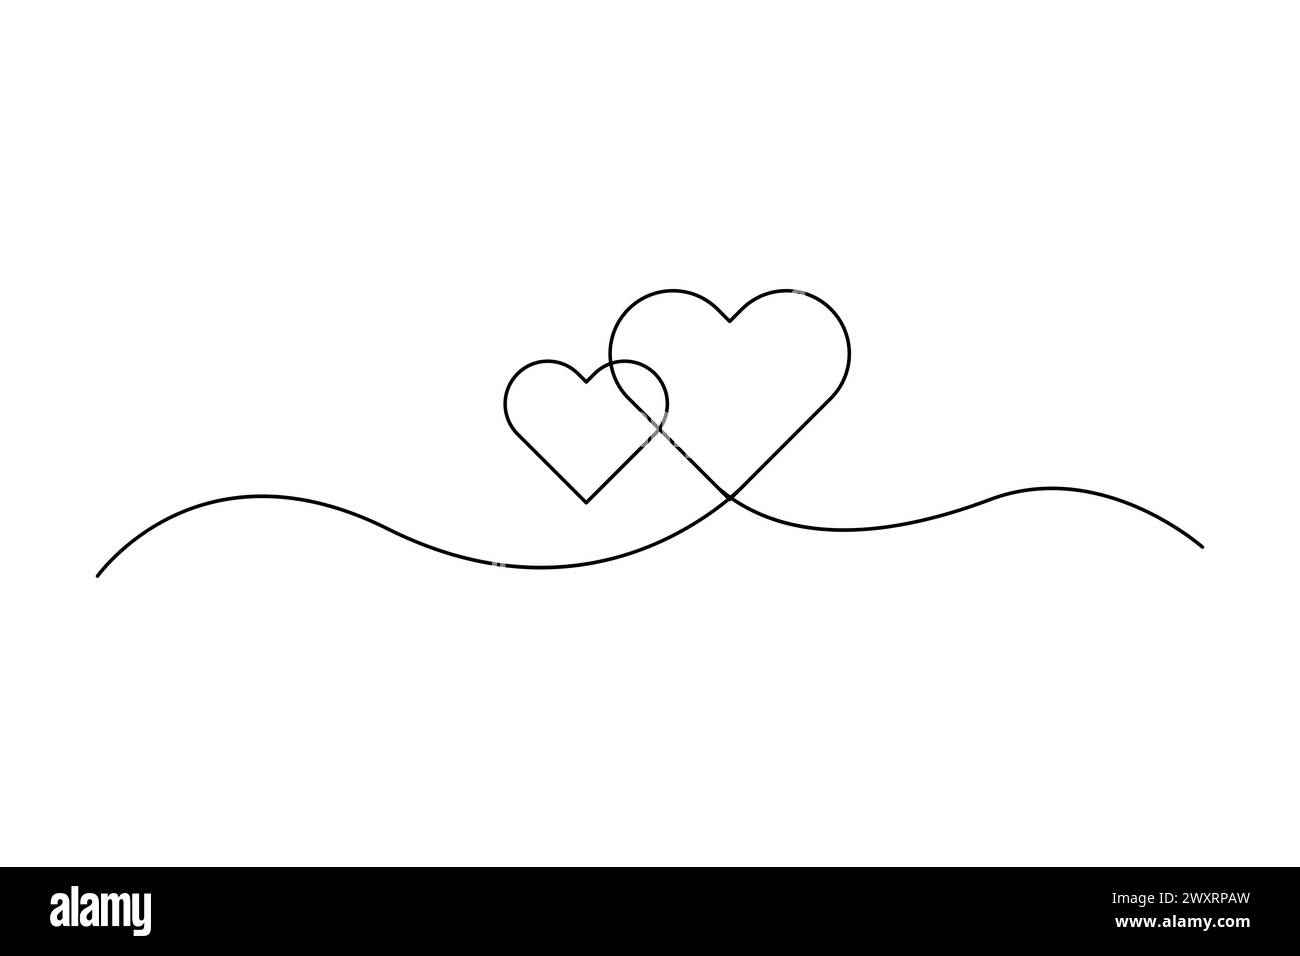 Linea di cuori a incastro art. Disegno a linea continua. Simbolo d'amore. Design minimalista. Illustrazione vettoriale. EPS 10. Illustrazione Vettoriale